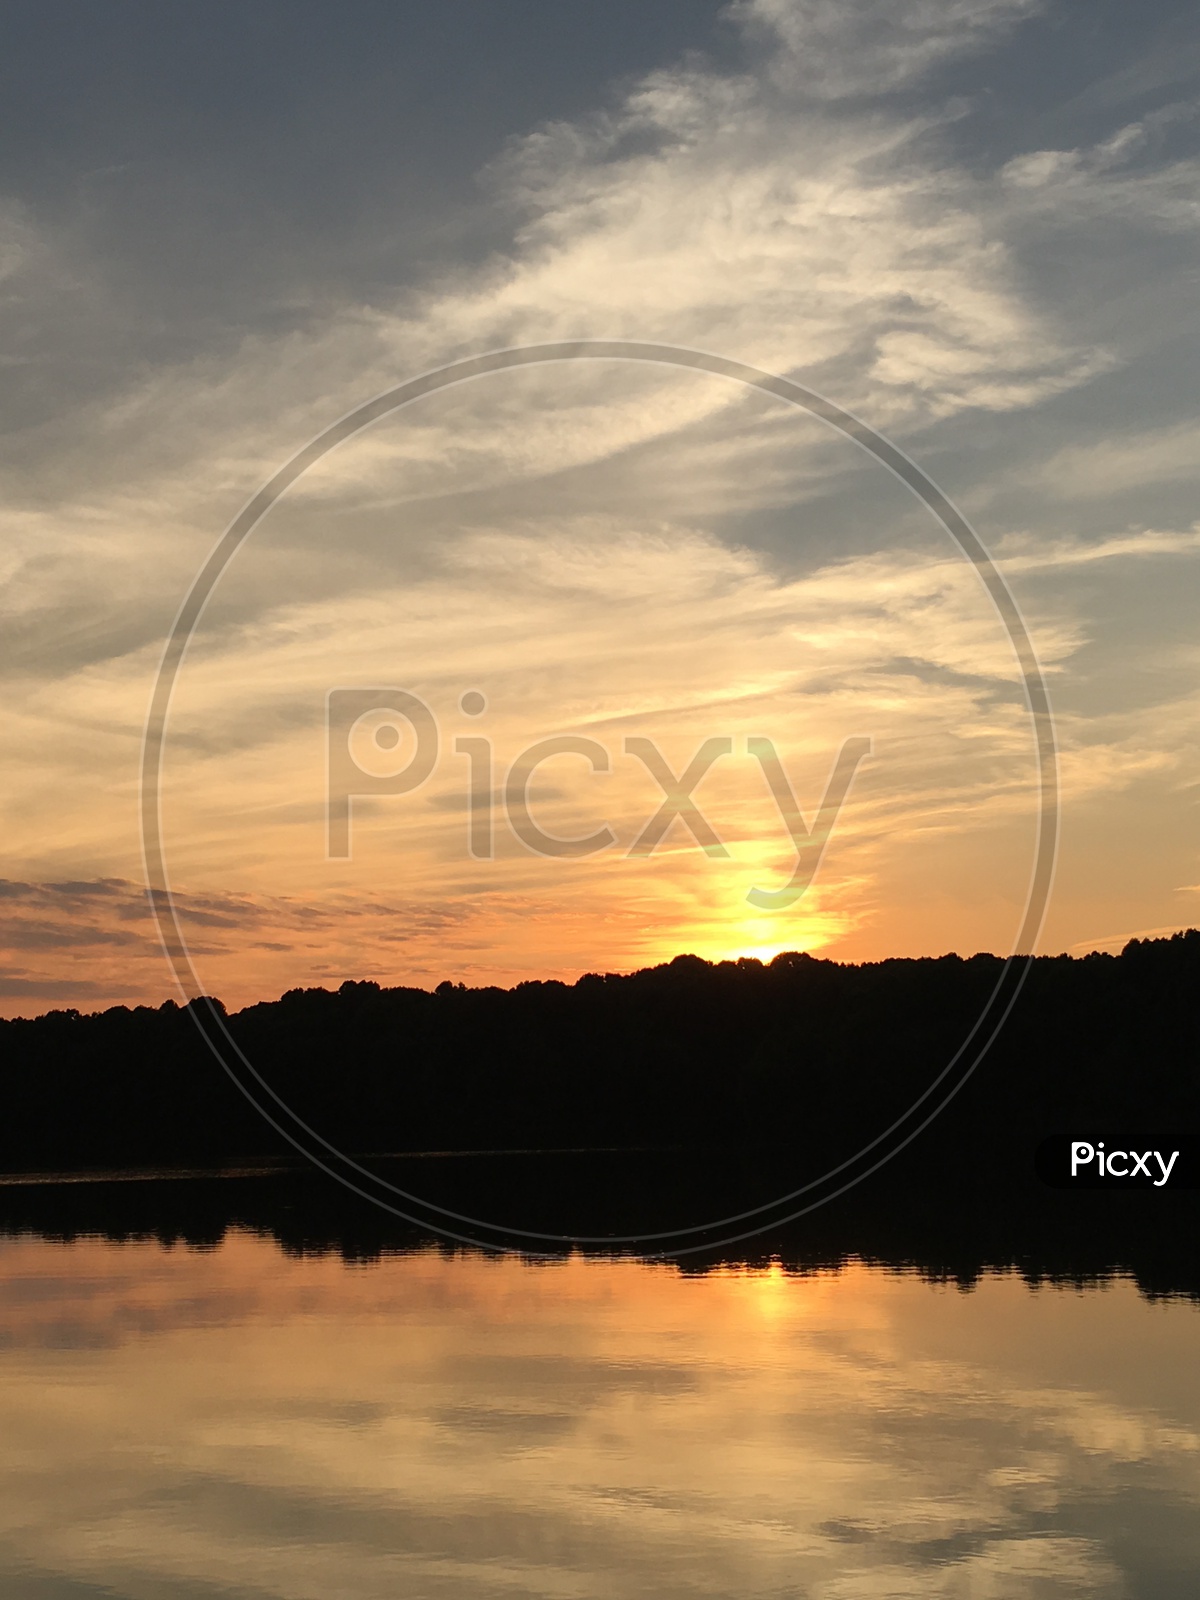 Sun set at lake loop in Maryland, USA